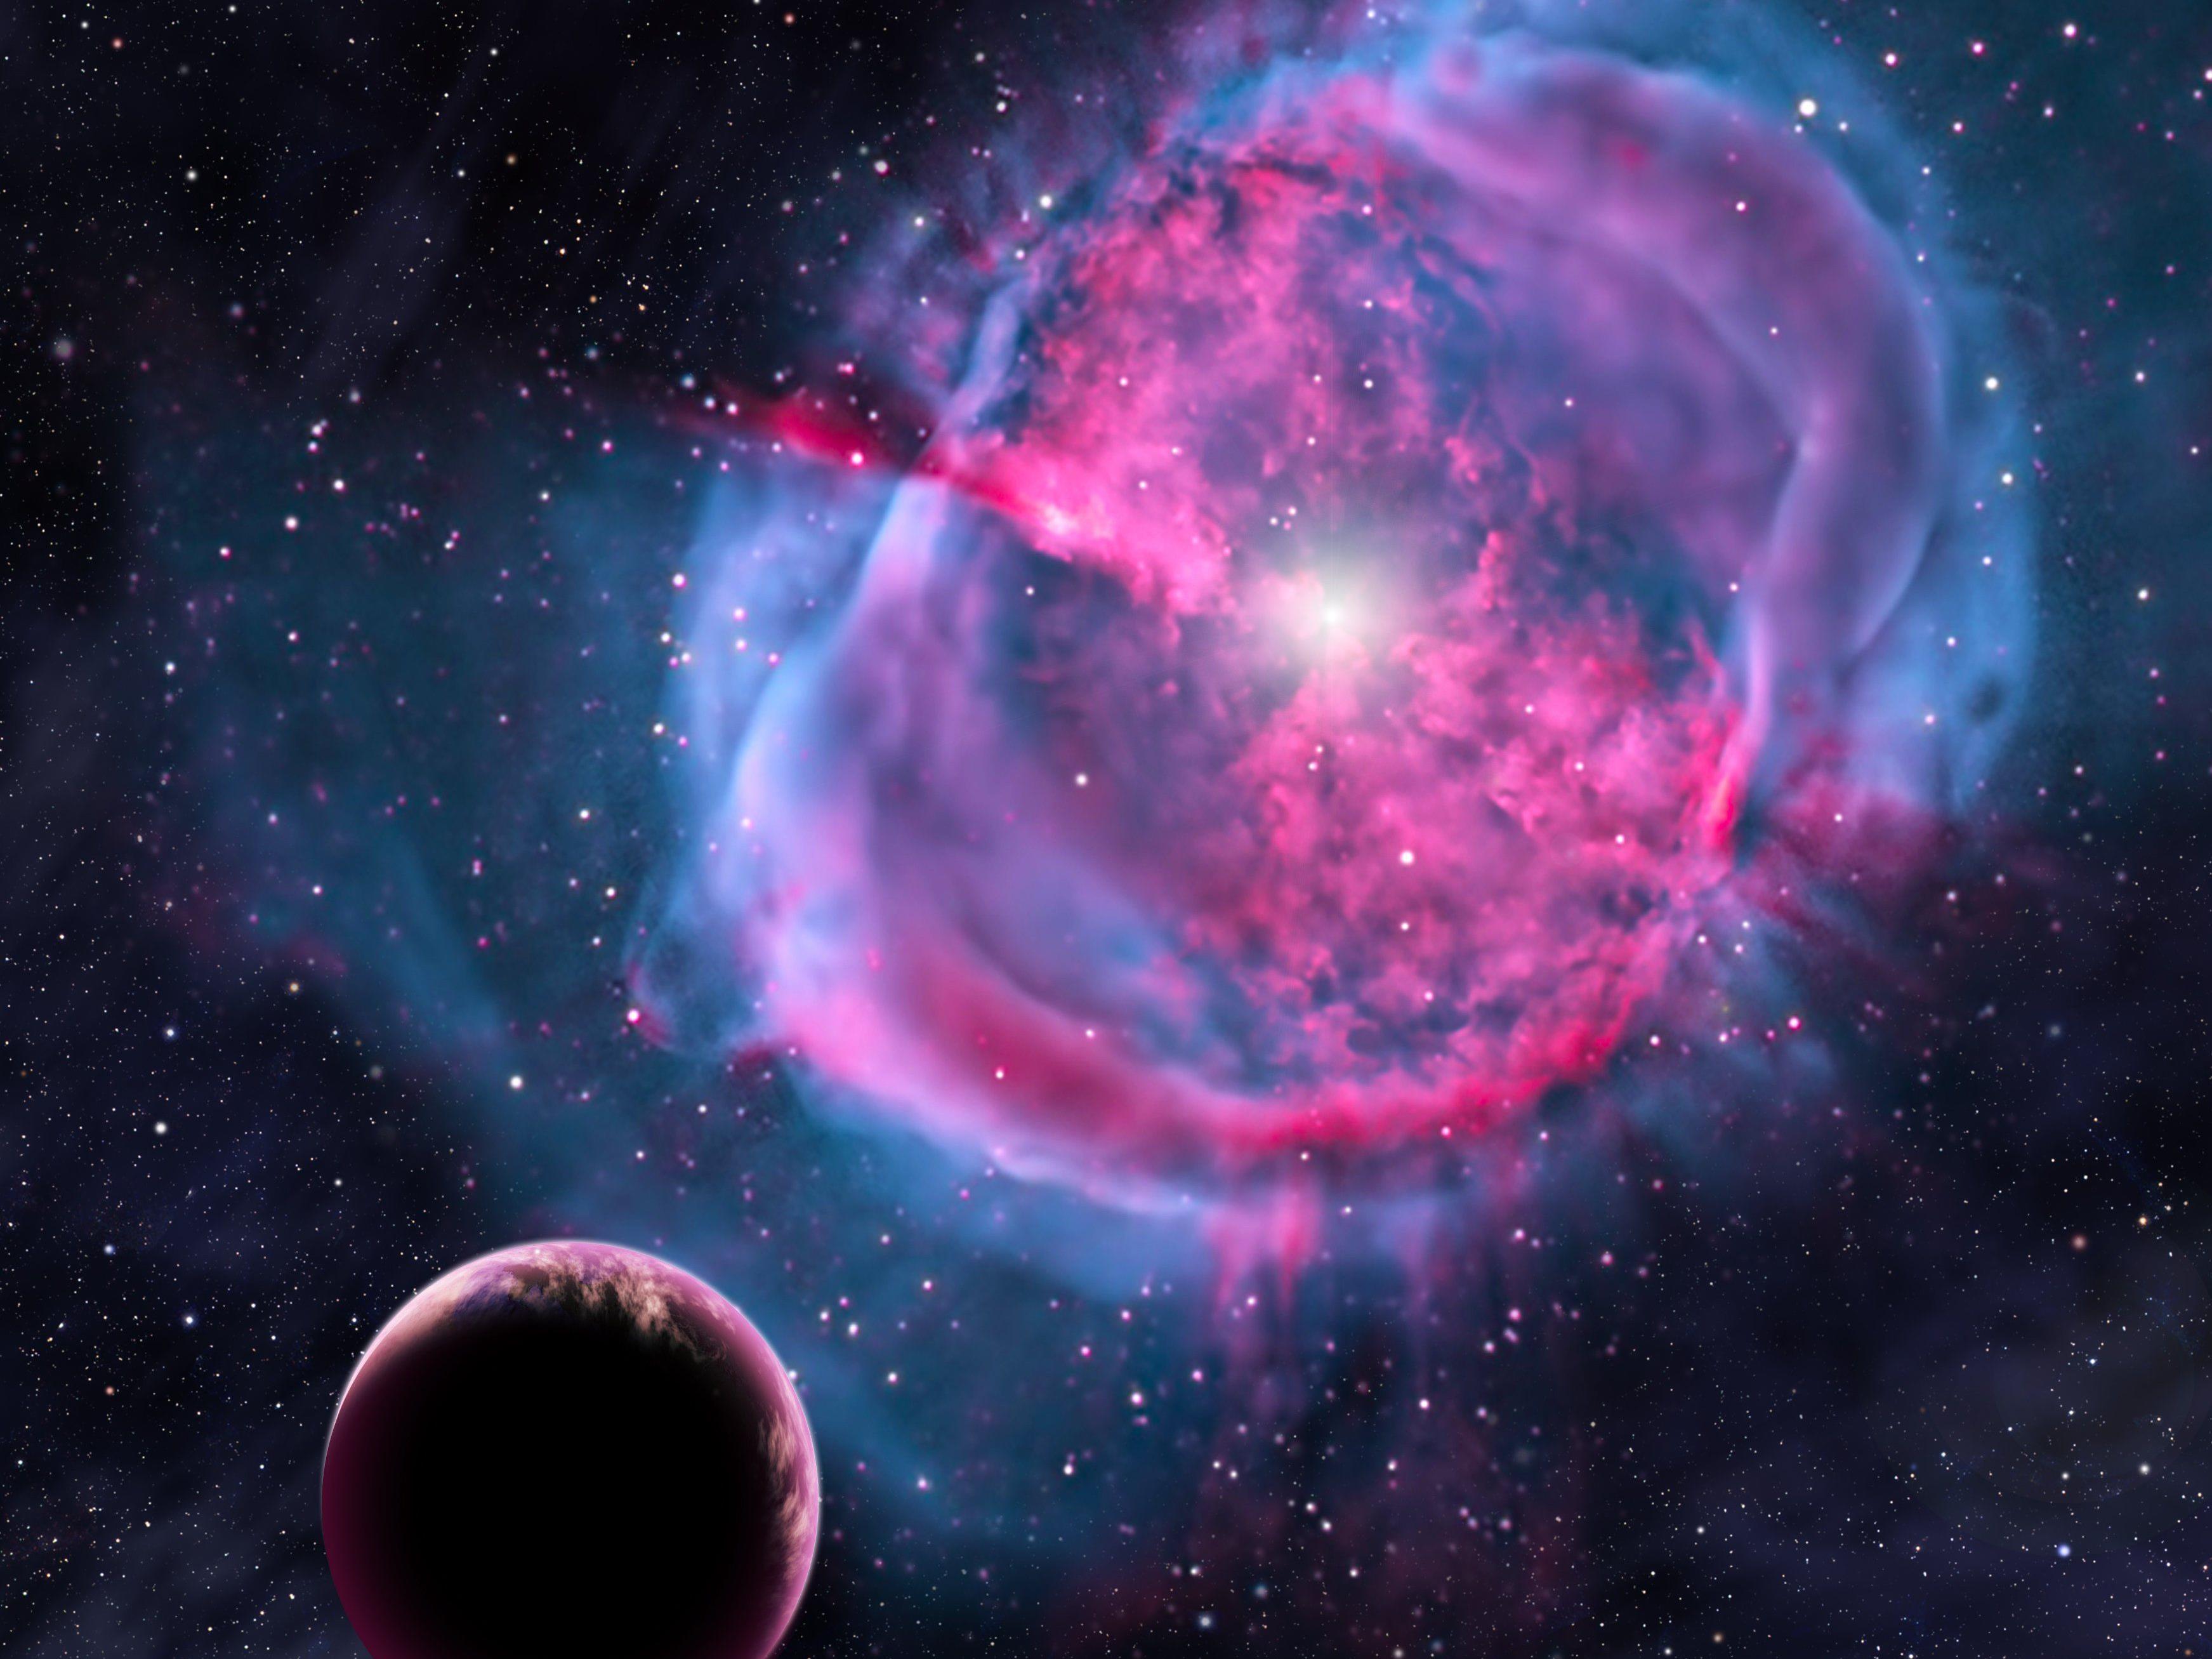 Diese künstlerische Darstellung zeigt einen erdähnlichen Planeten, der einen entstehenden Stern umkreist.